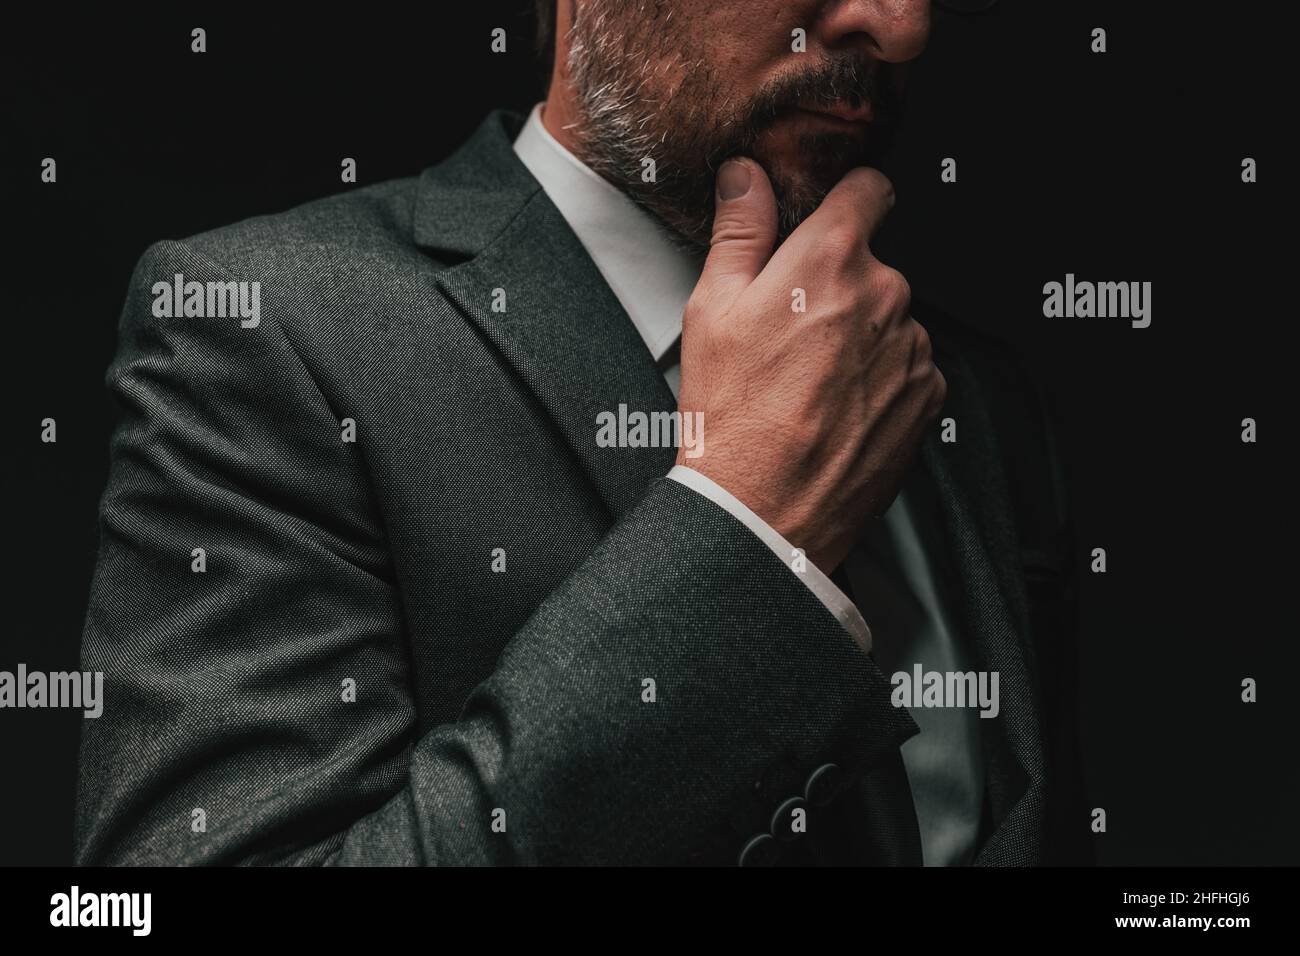 Überlegungen vor der Gründung eines Unternehmens, elegante Geschäftsmann in grauem Anzug denken und planen, Low-Key-Porträt mit selektivem Fokus Stockfoto